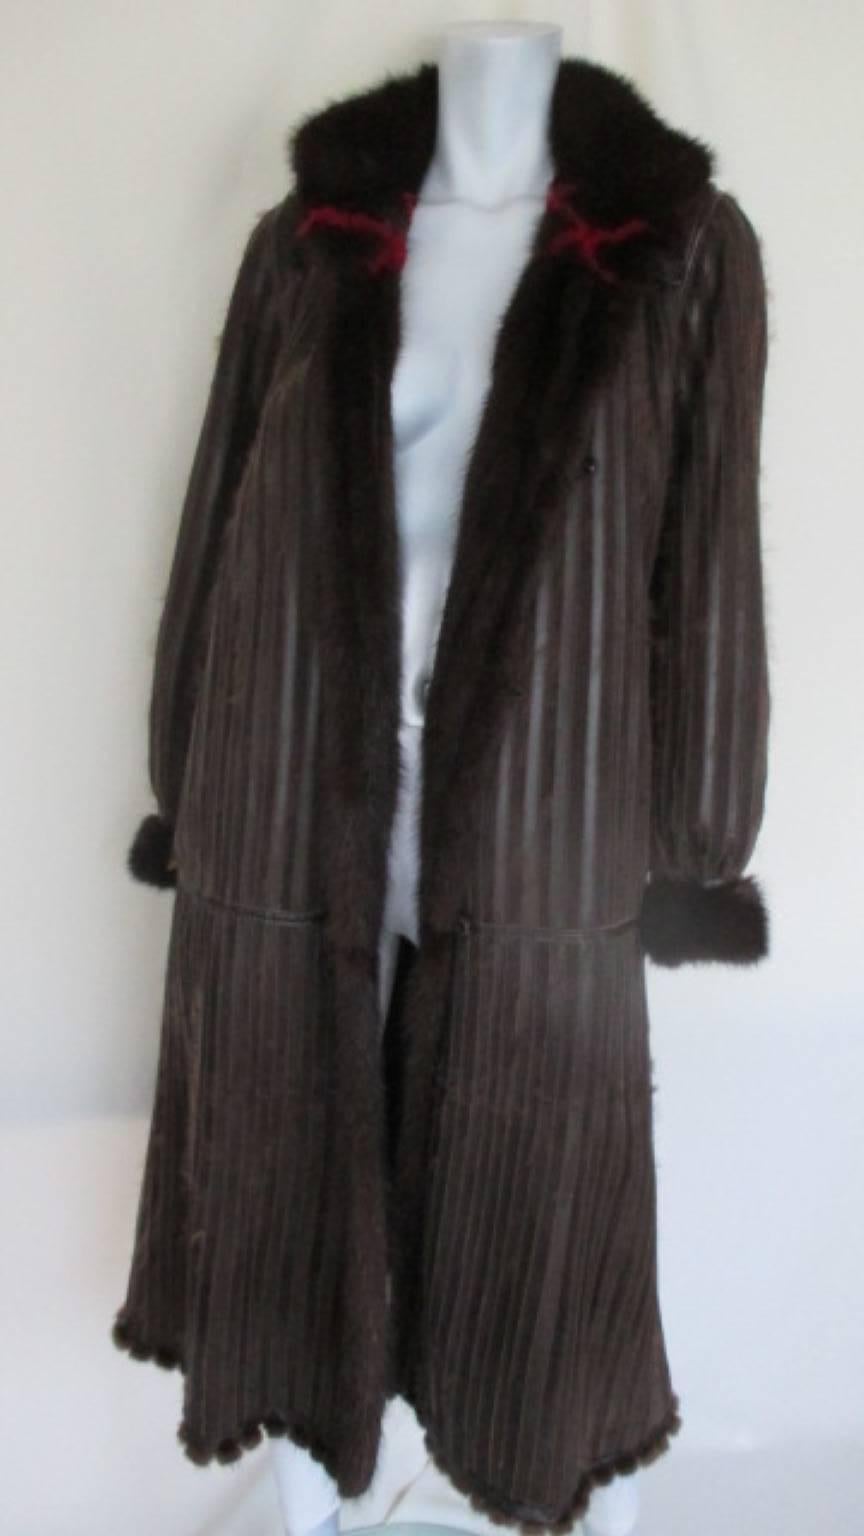 Dieser Vintage-Mantel ist aus hochwertigem:: weichem Nerz:: kann von beiden Seiten getragen werden:: er hat 2 Taschen innen und außen auf der Fellseite und auf der Lederseite. 
Es hat 4 Schließknöpfe. 
Die Kürschnerin ist Tarja Niskanen aus